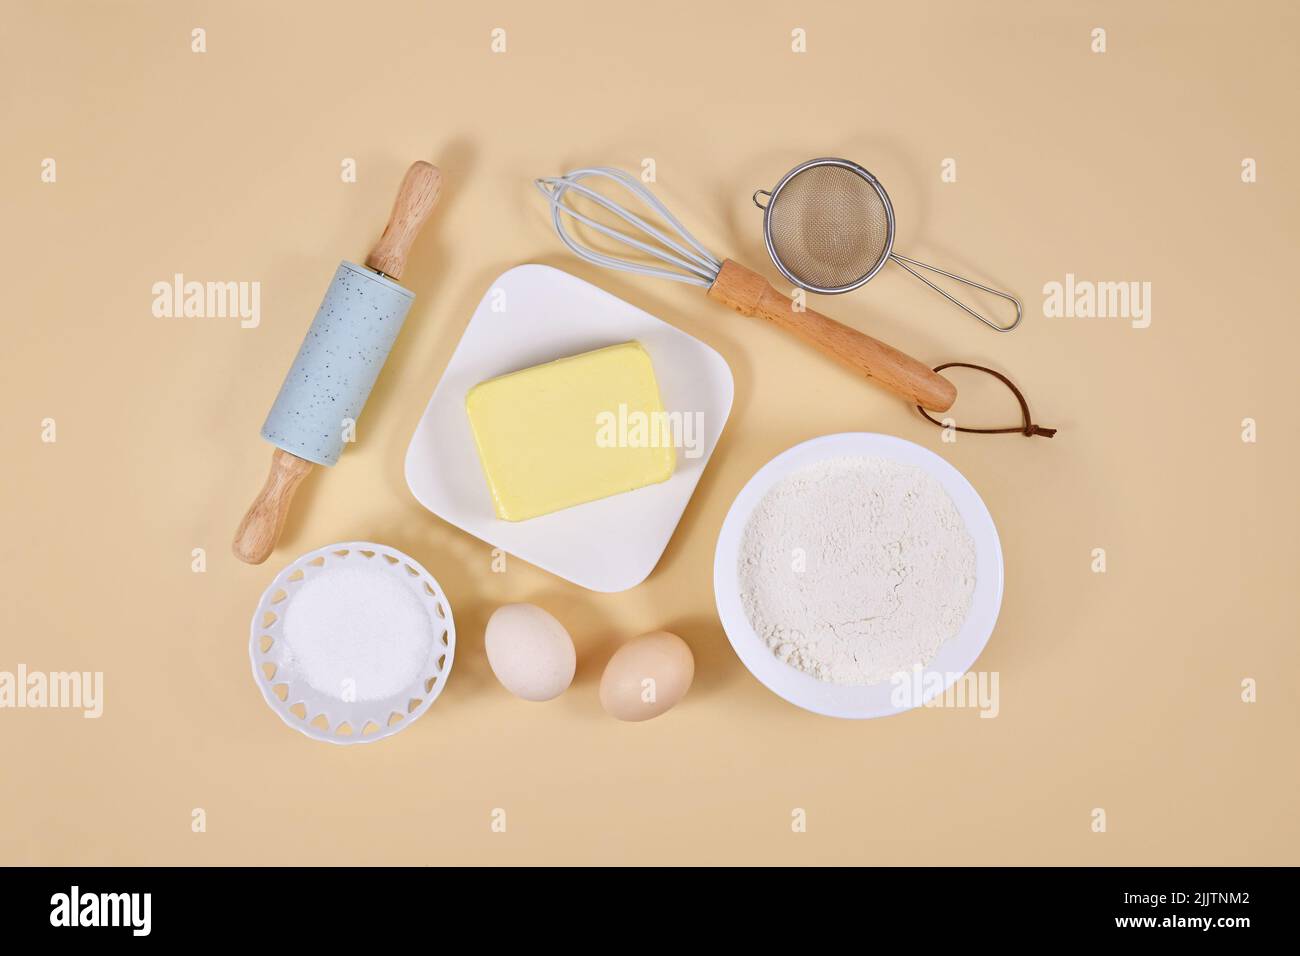 Ingredientes para masa de pasteles y herramientas para hornear sobre fondo beige Foto de stock